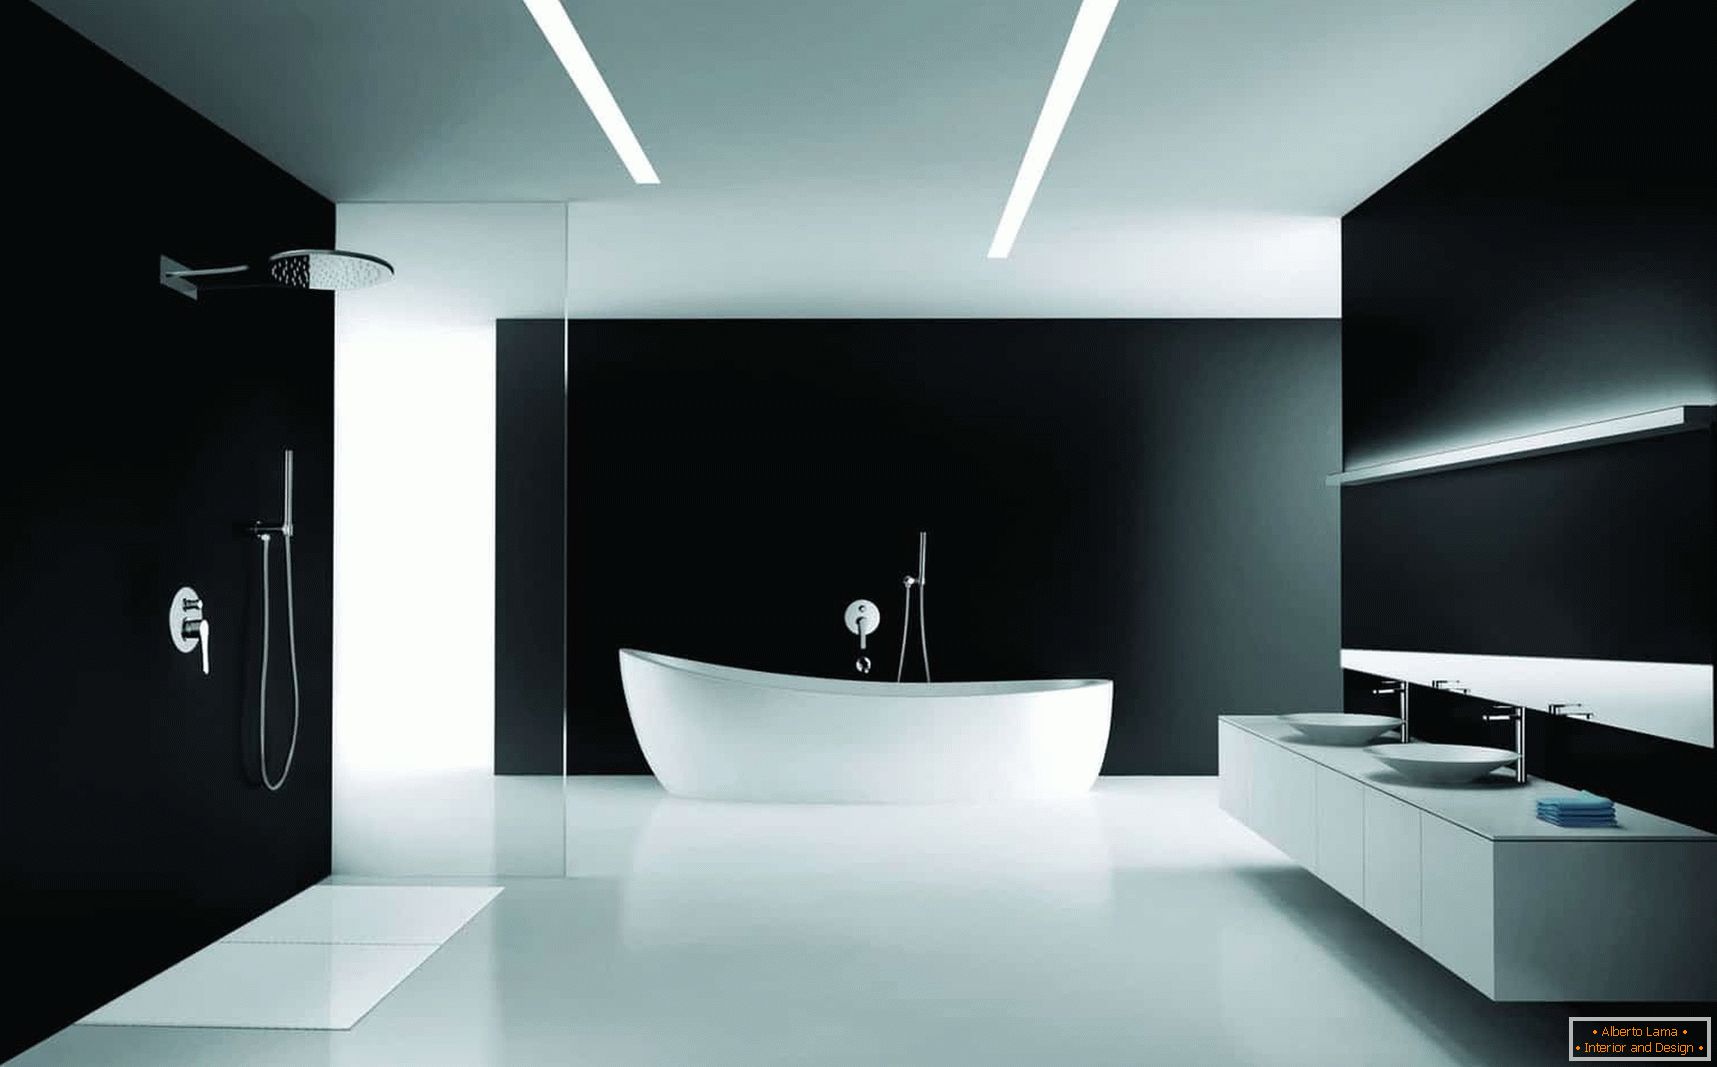 Opzione di design per il bagno в минимализме